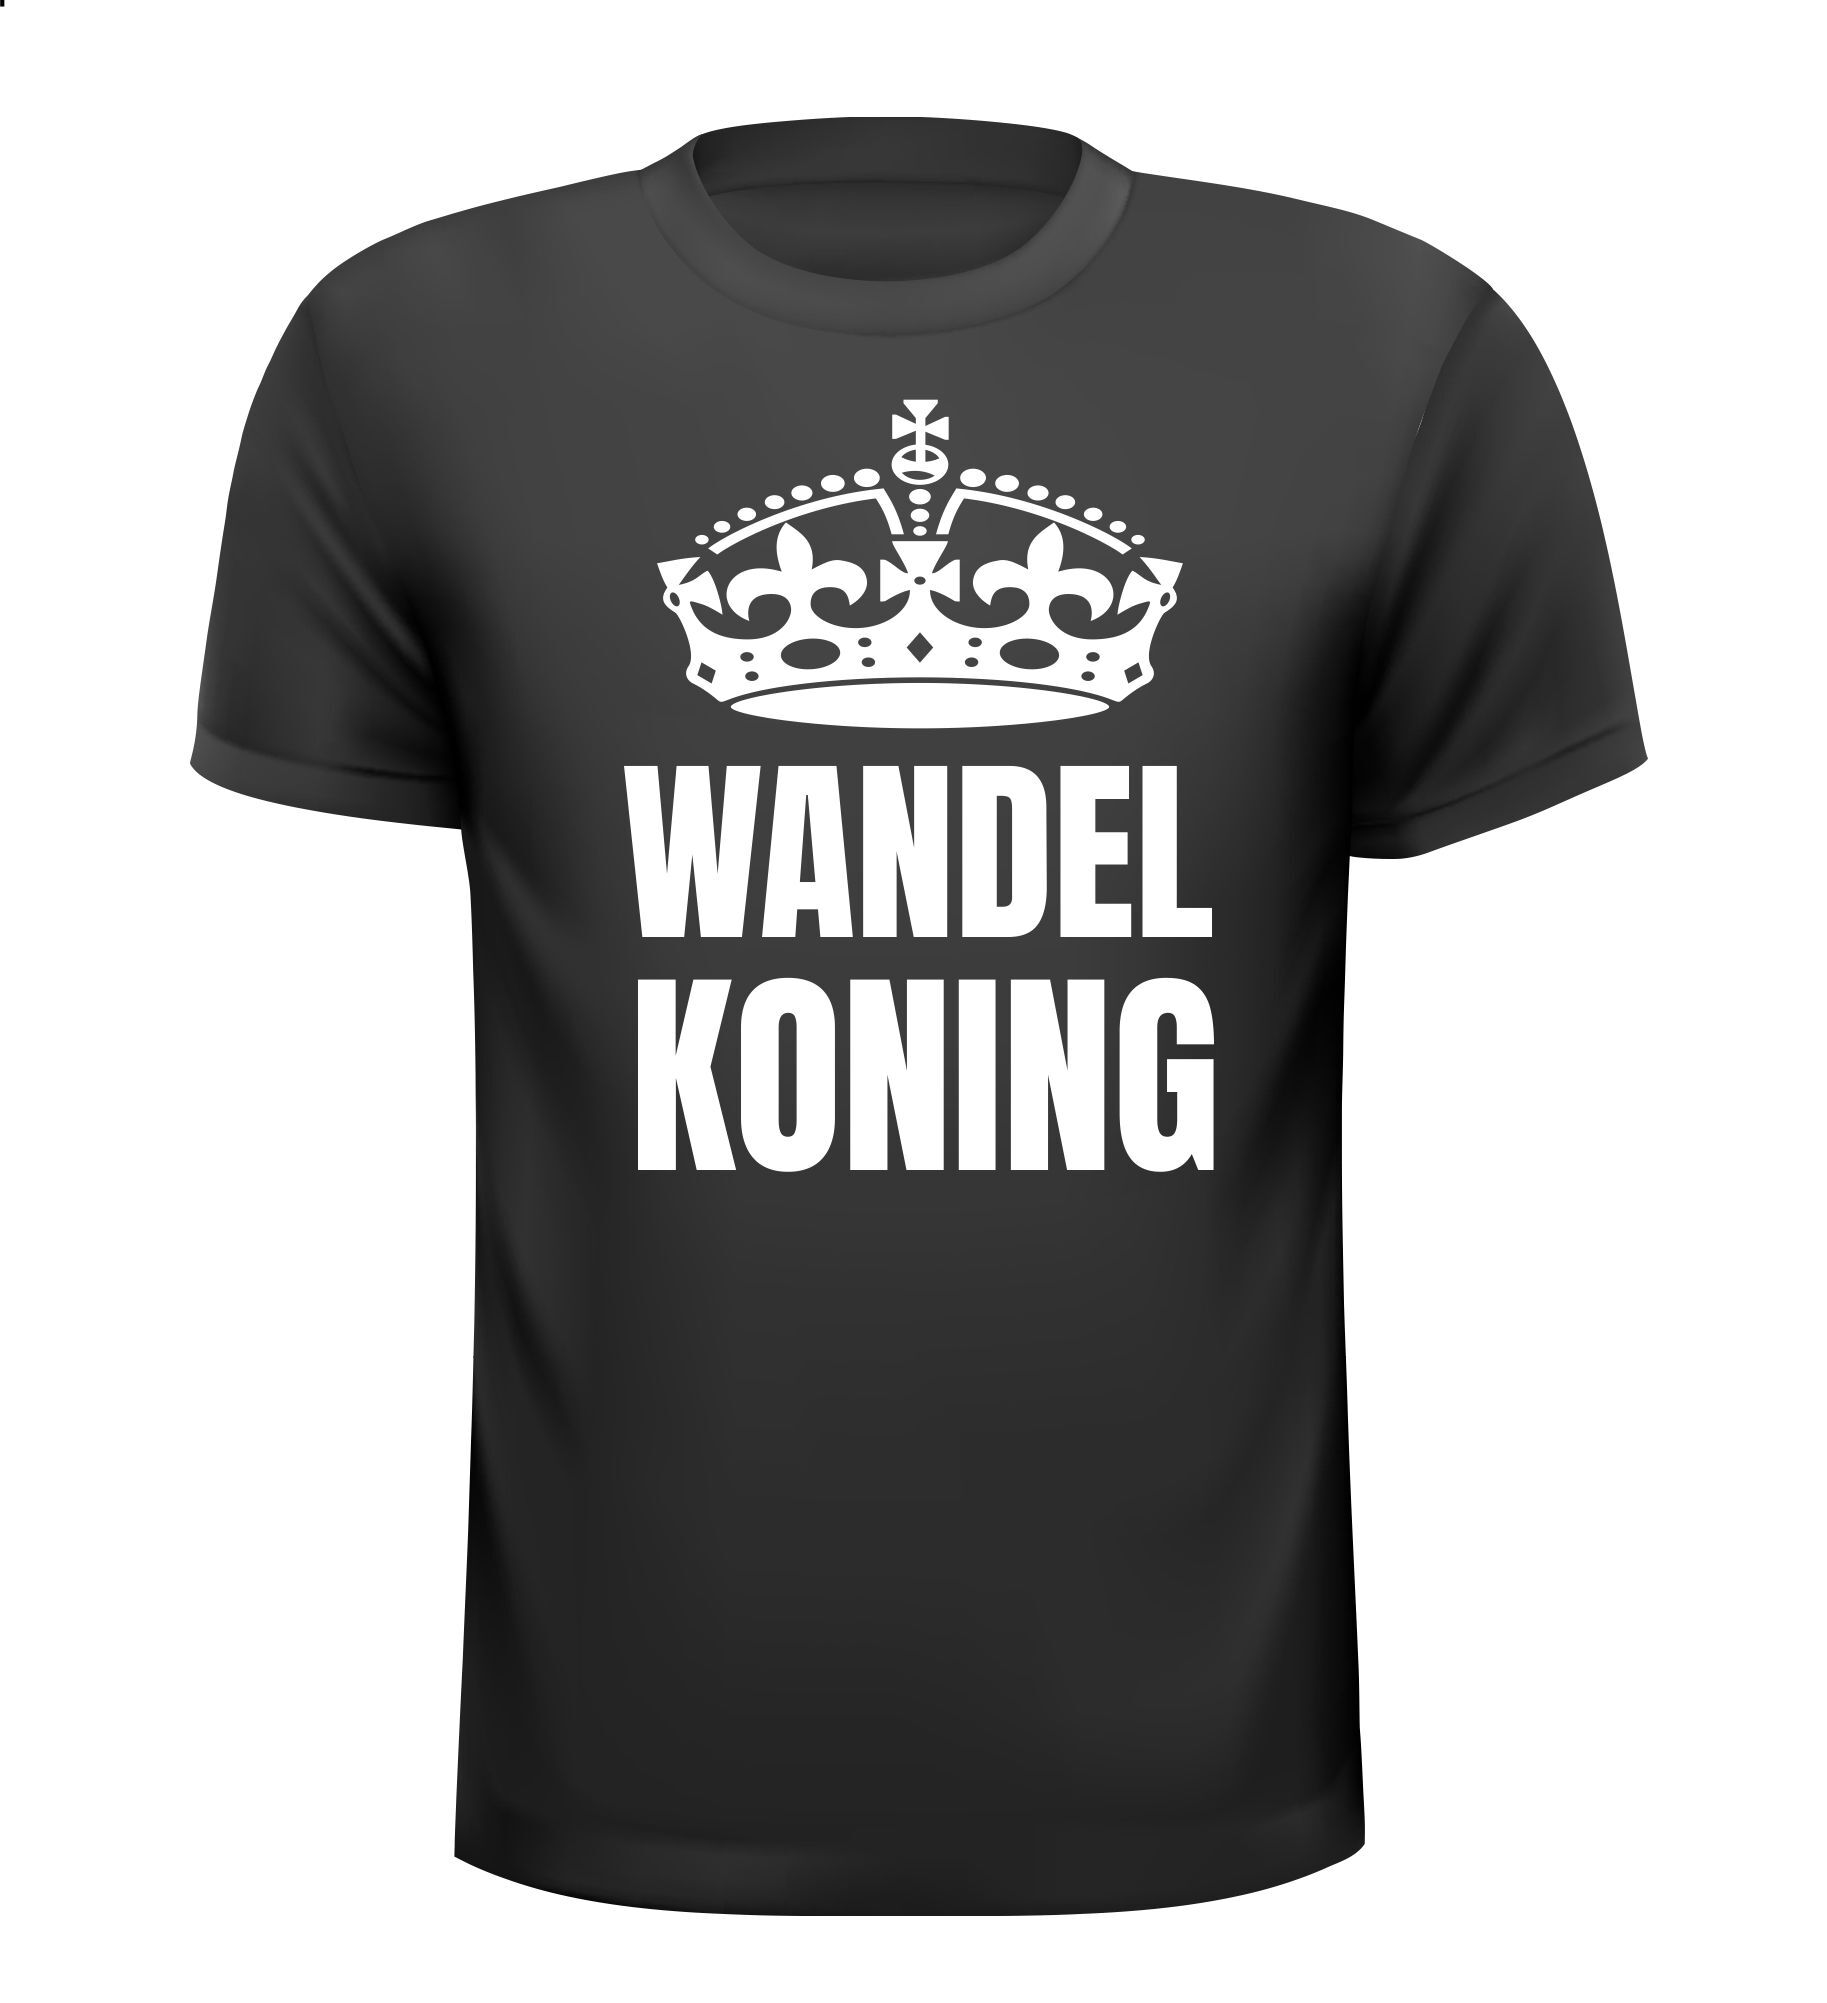 T-shirt Wandel koning Leuk voor een wandelvierdaagse of avondvierdaagse